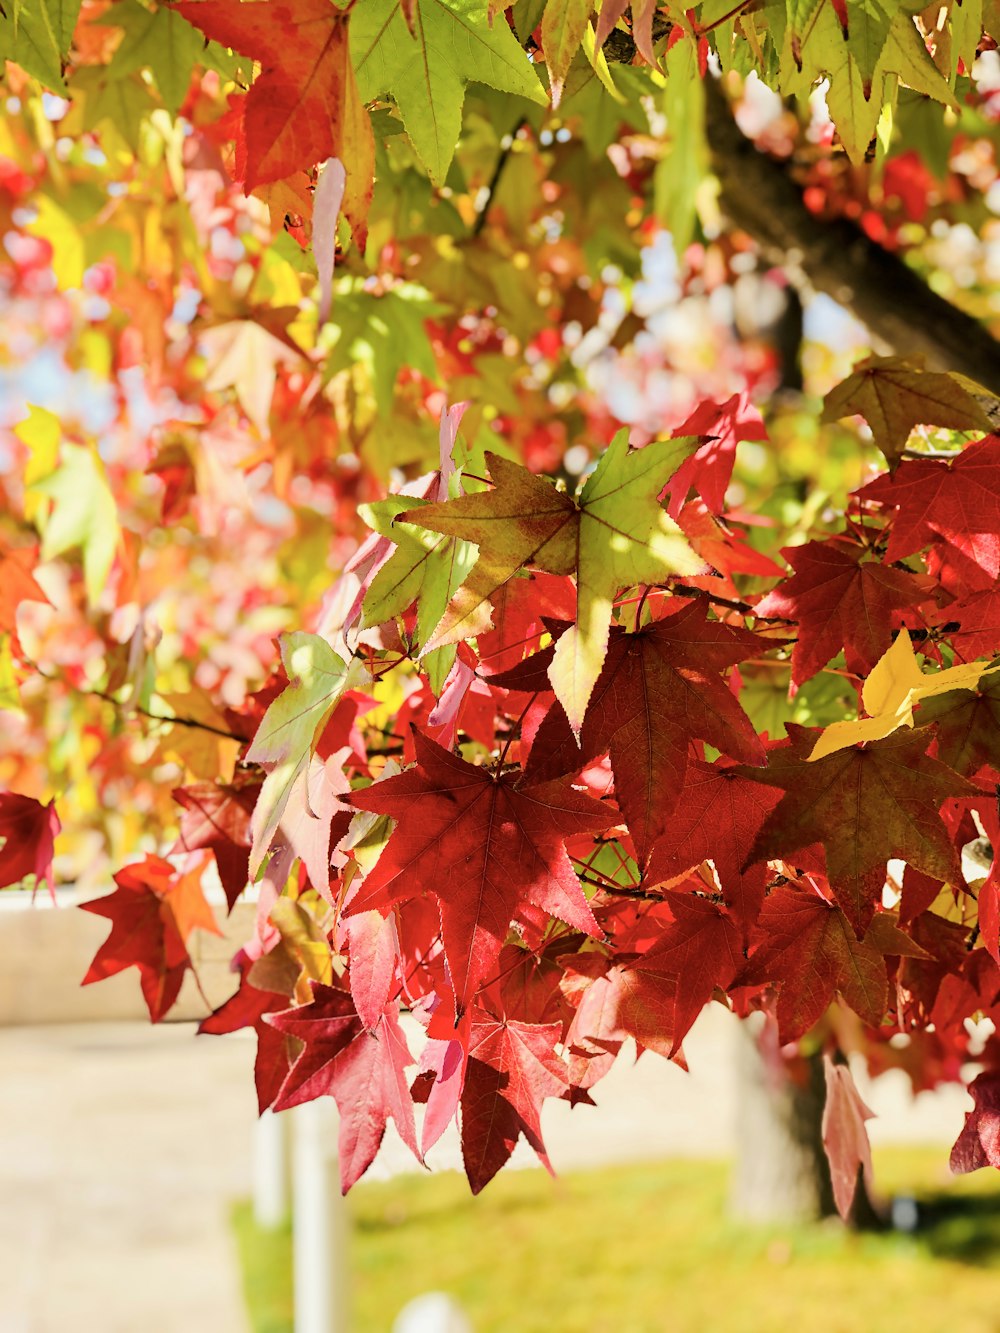 foglie rosse e verdi su ramo marrone dell'albero